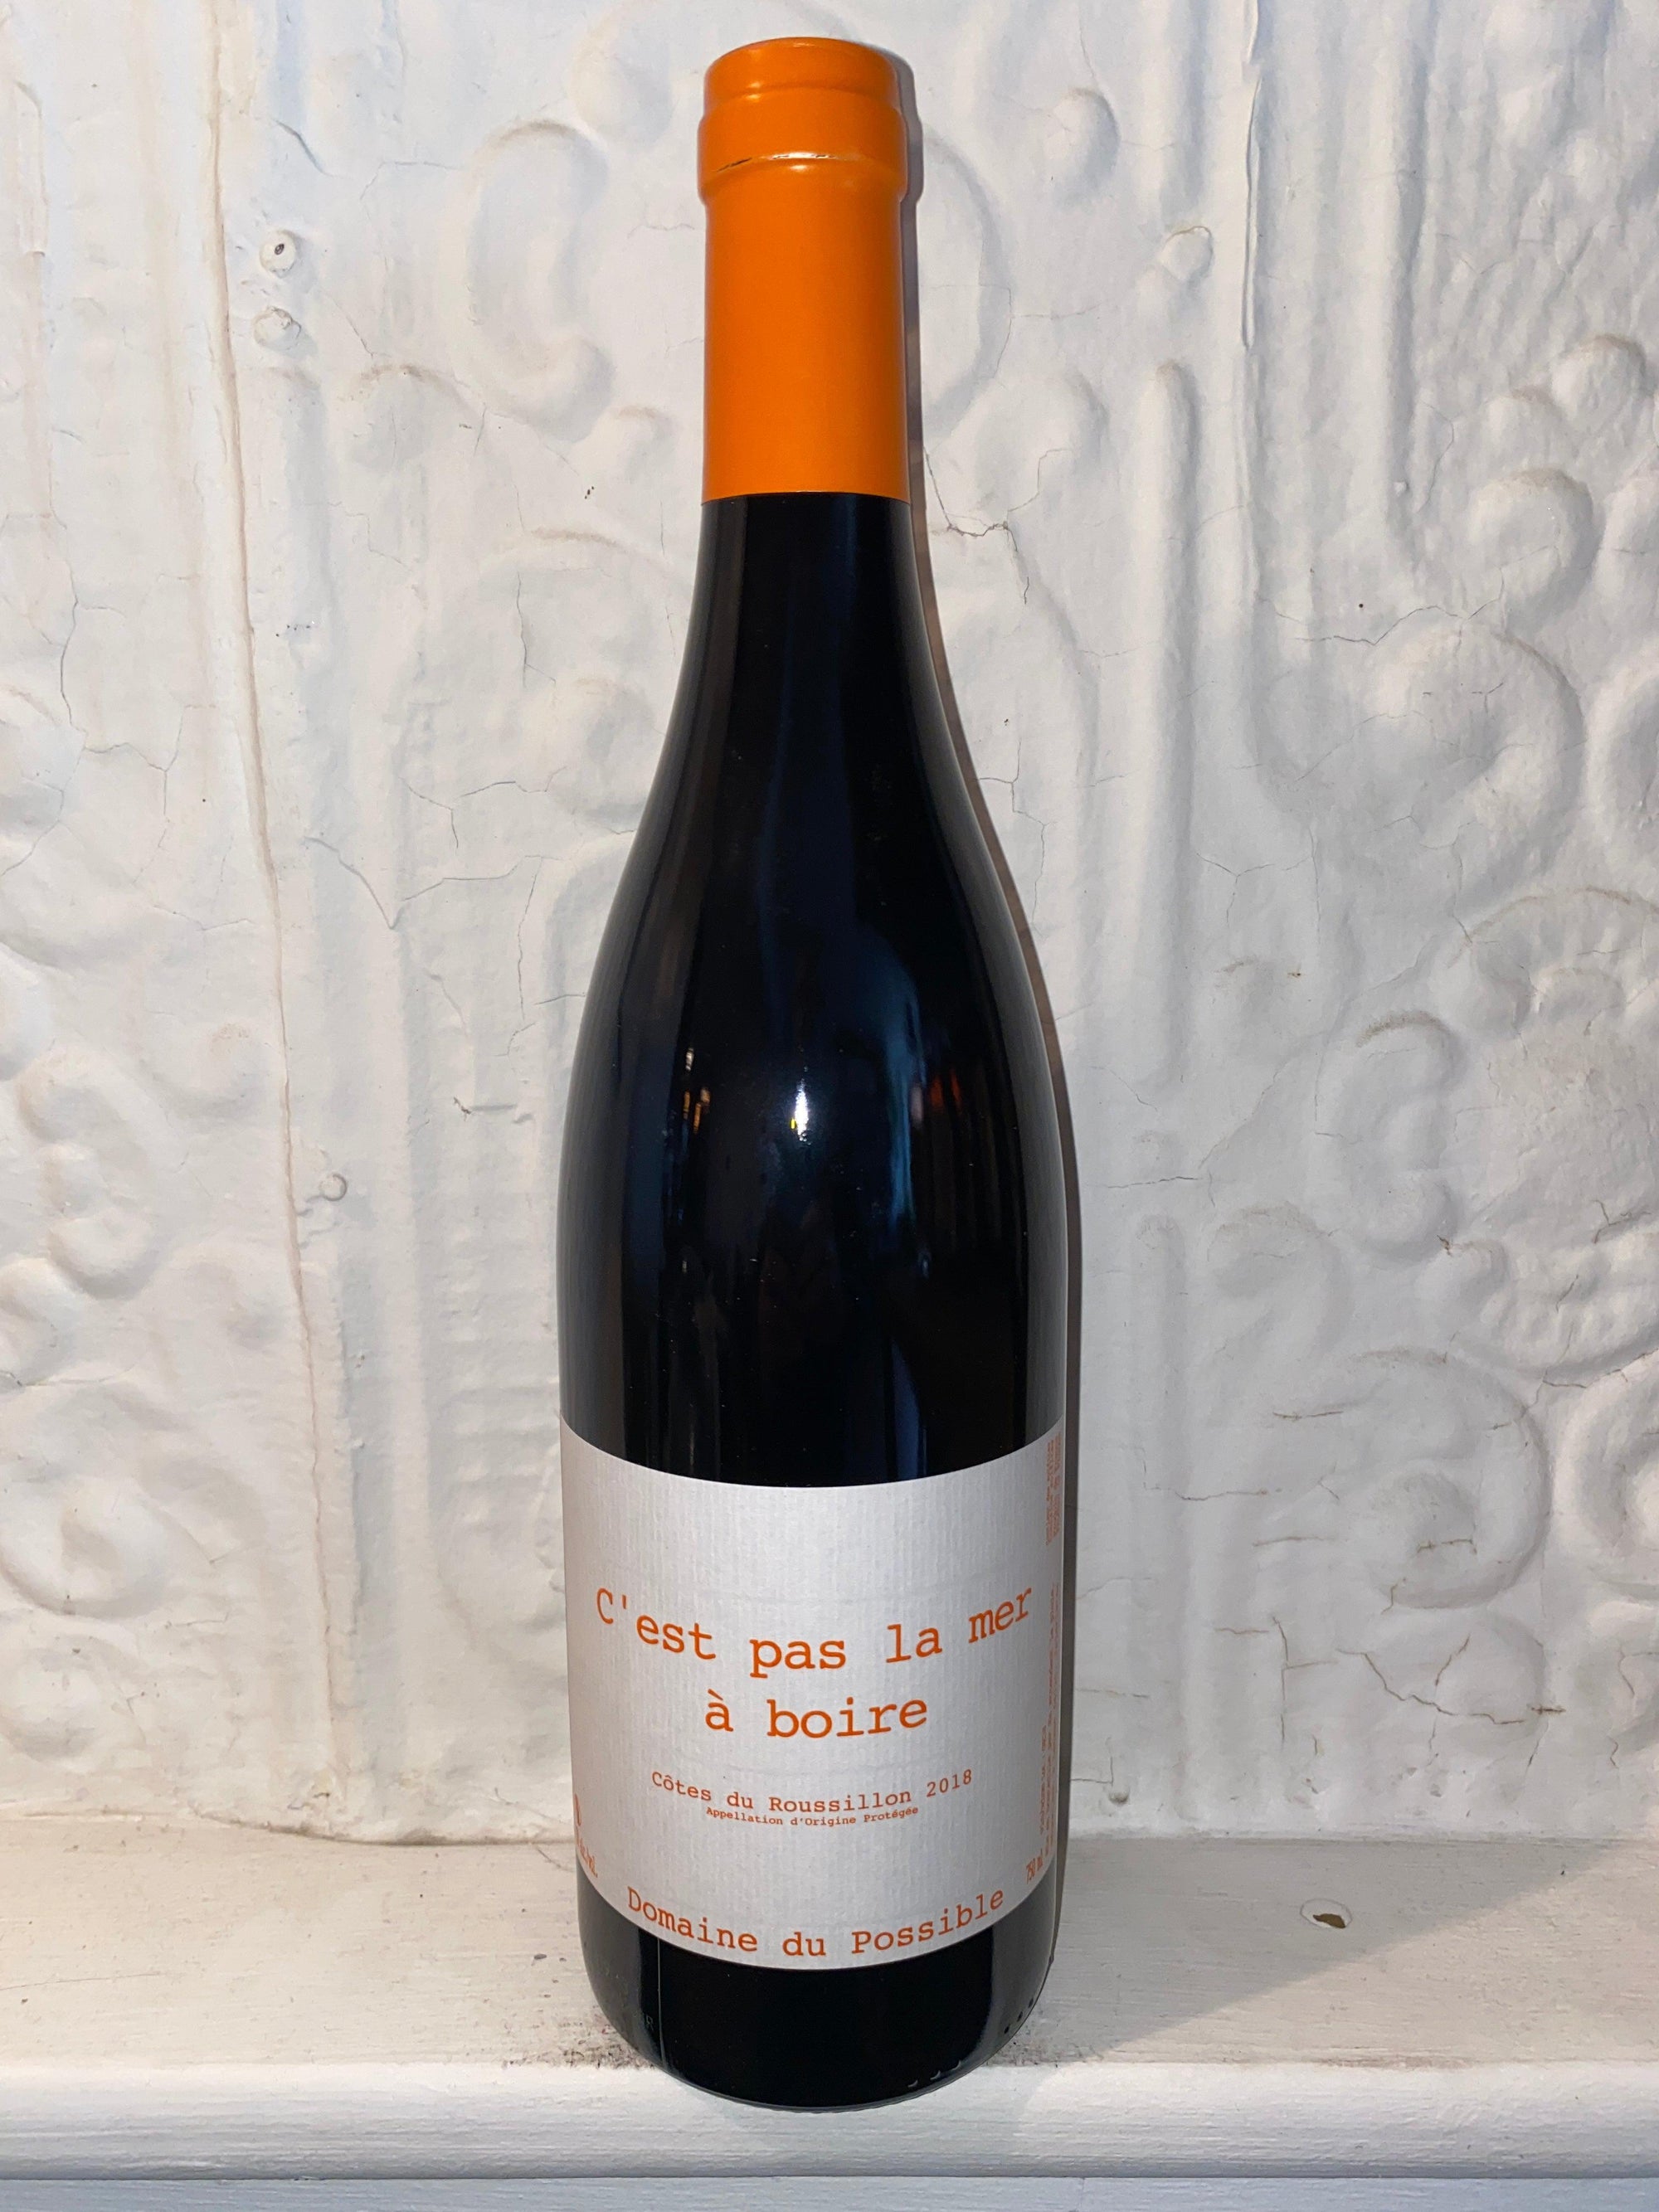 C'est pas le Mer a Boire, Domaine du Possible 2018 (Languedoc, France)-Wine-Bibber & Bell